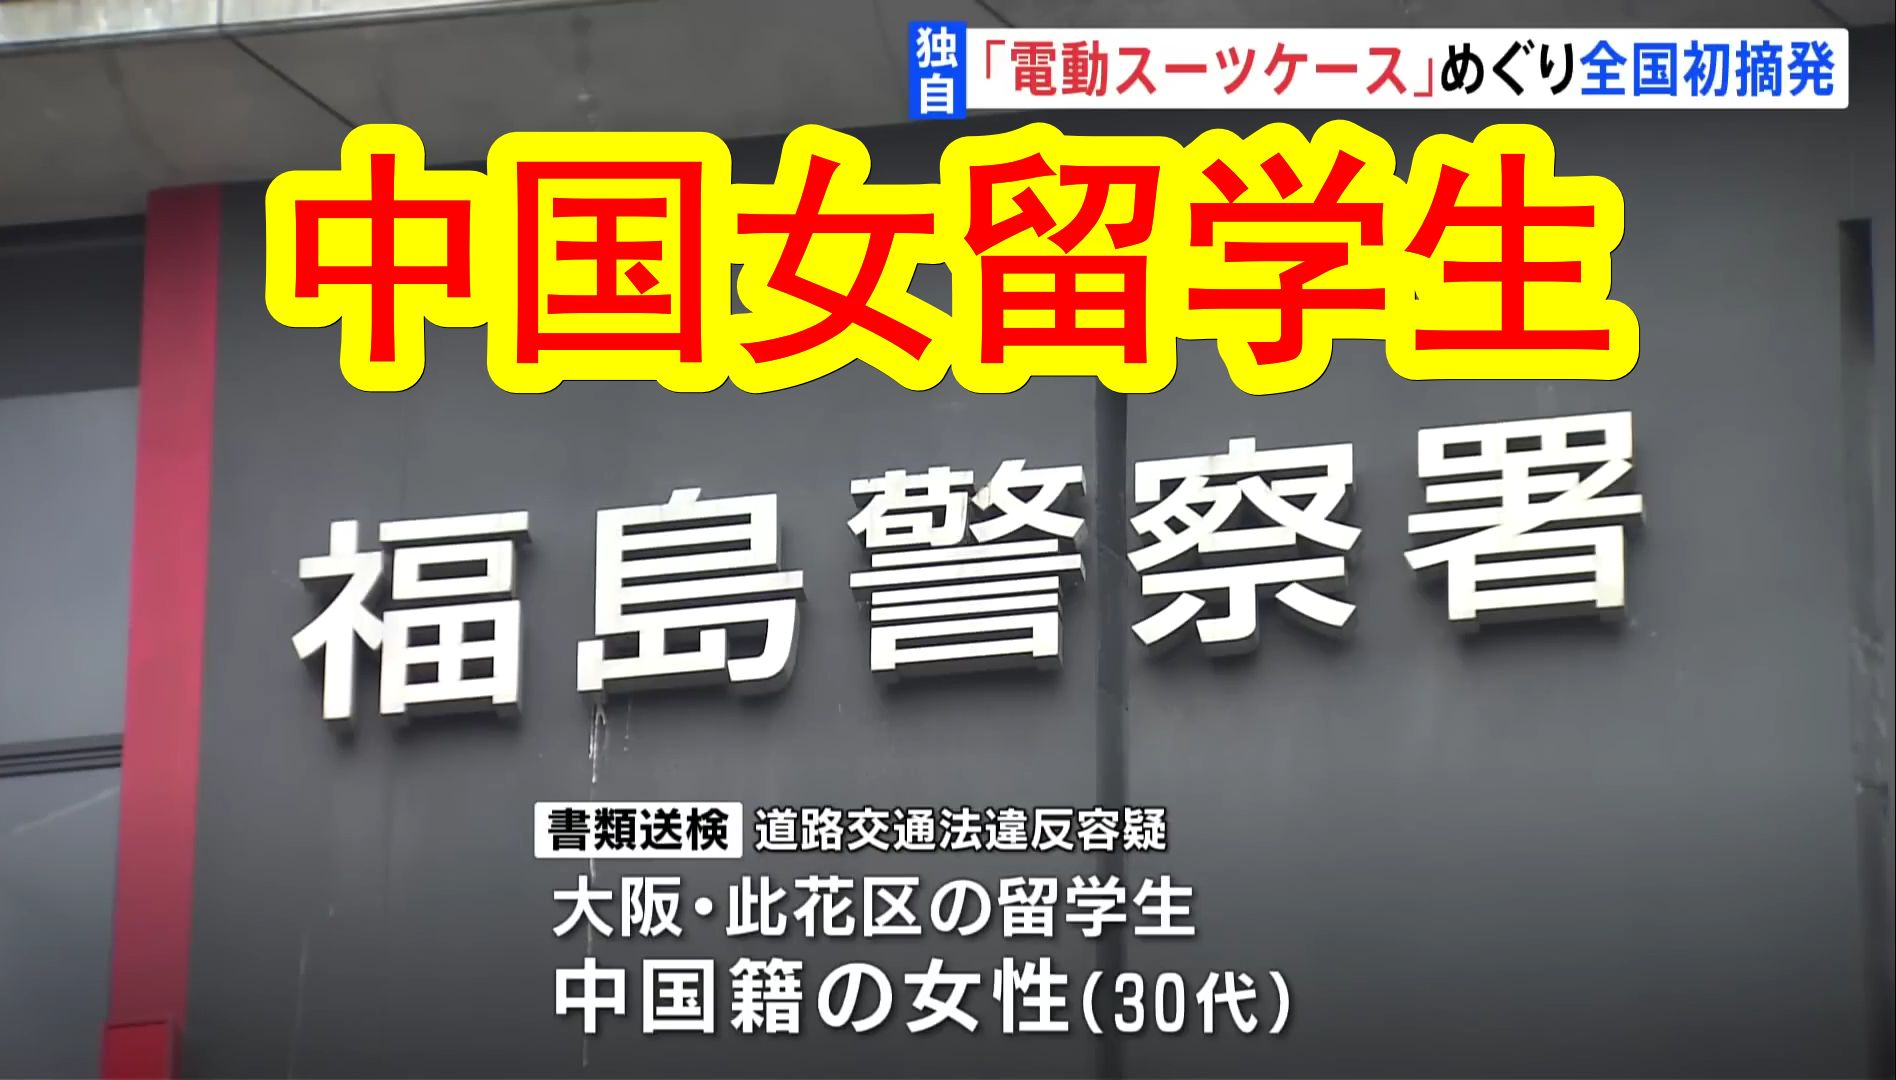 【中日双语】中国女留学生在日本大阪的把电动行李箱开上公路，违反道路交通法遭日本警方起诉。因电动行李箱上路被起诉在日本尚属首例。